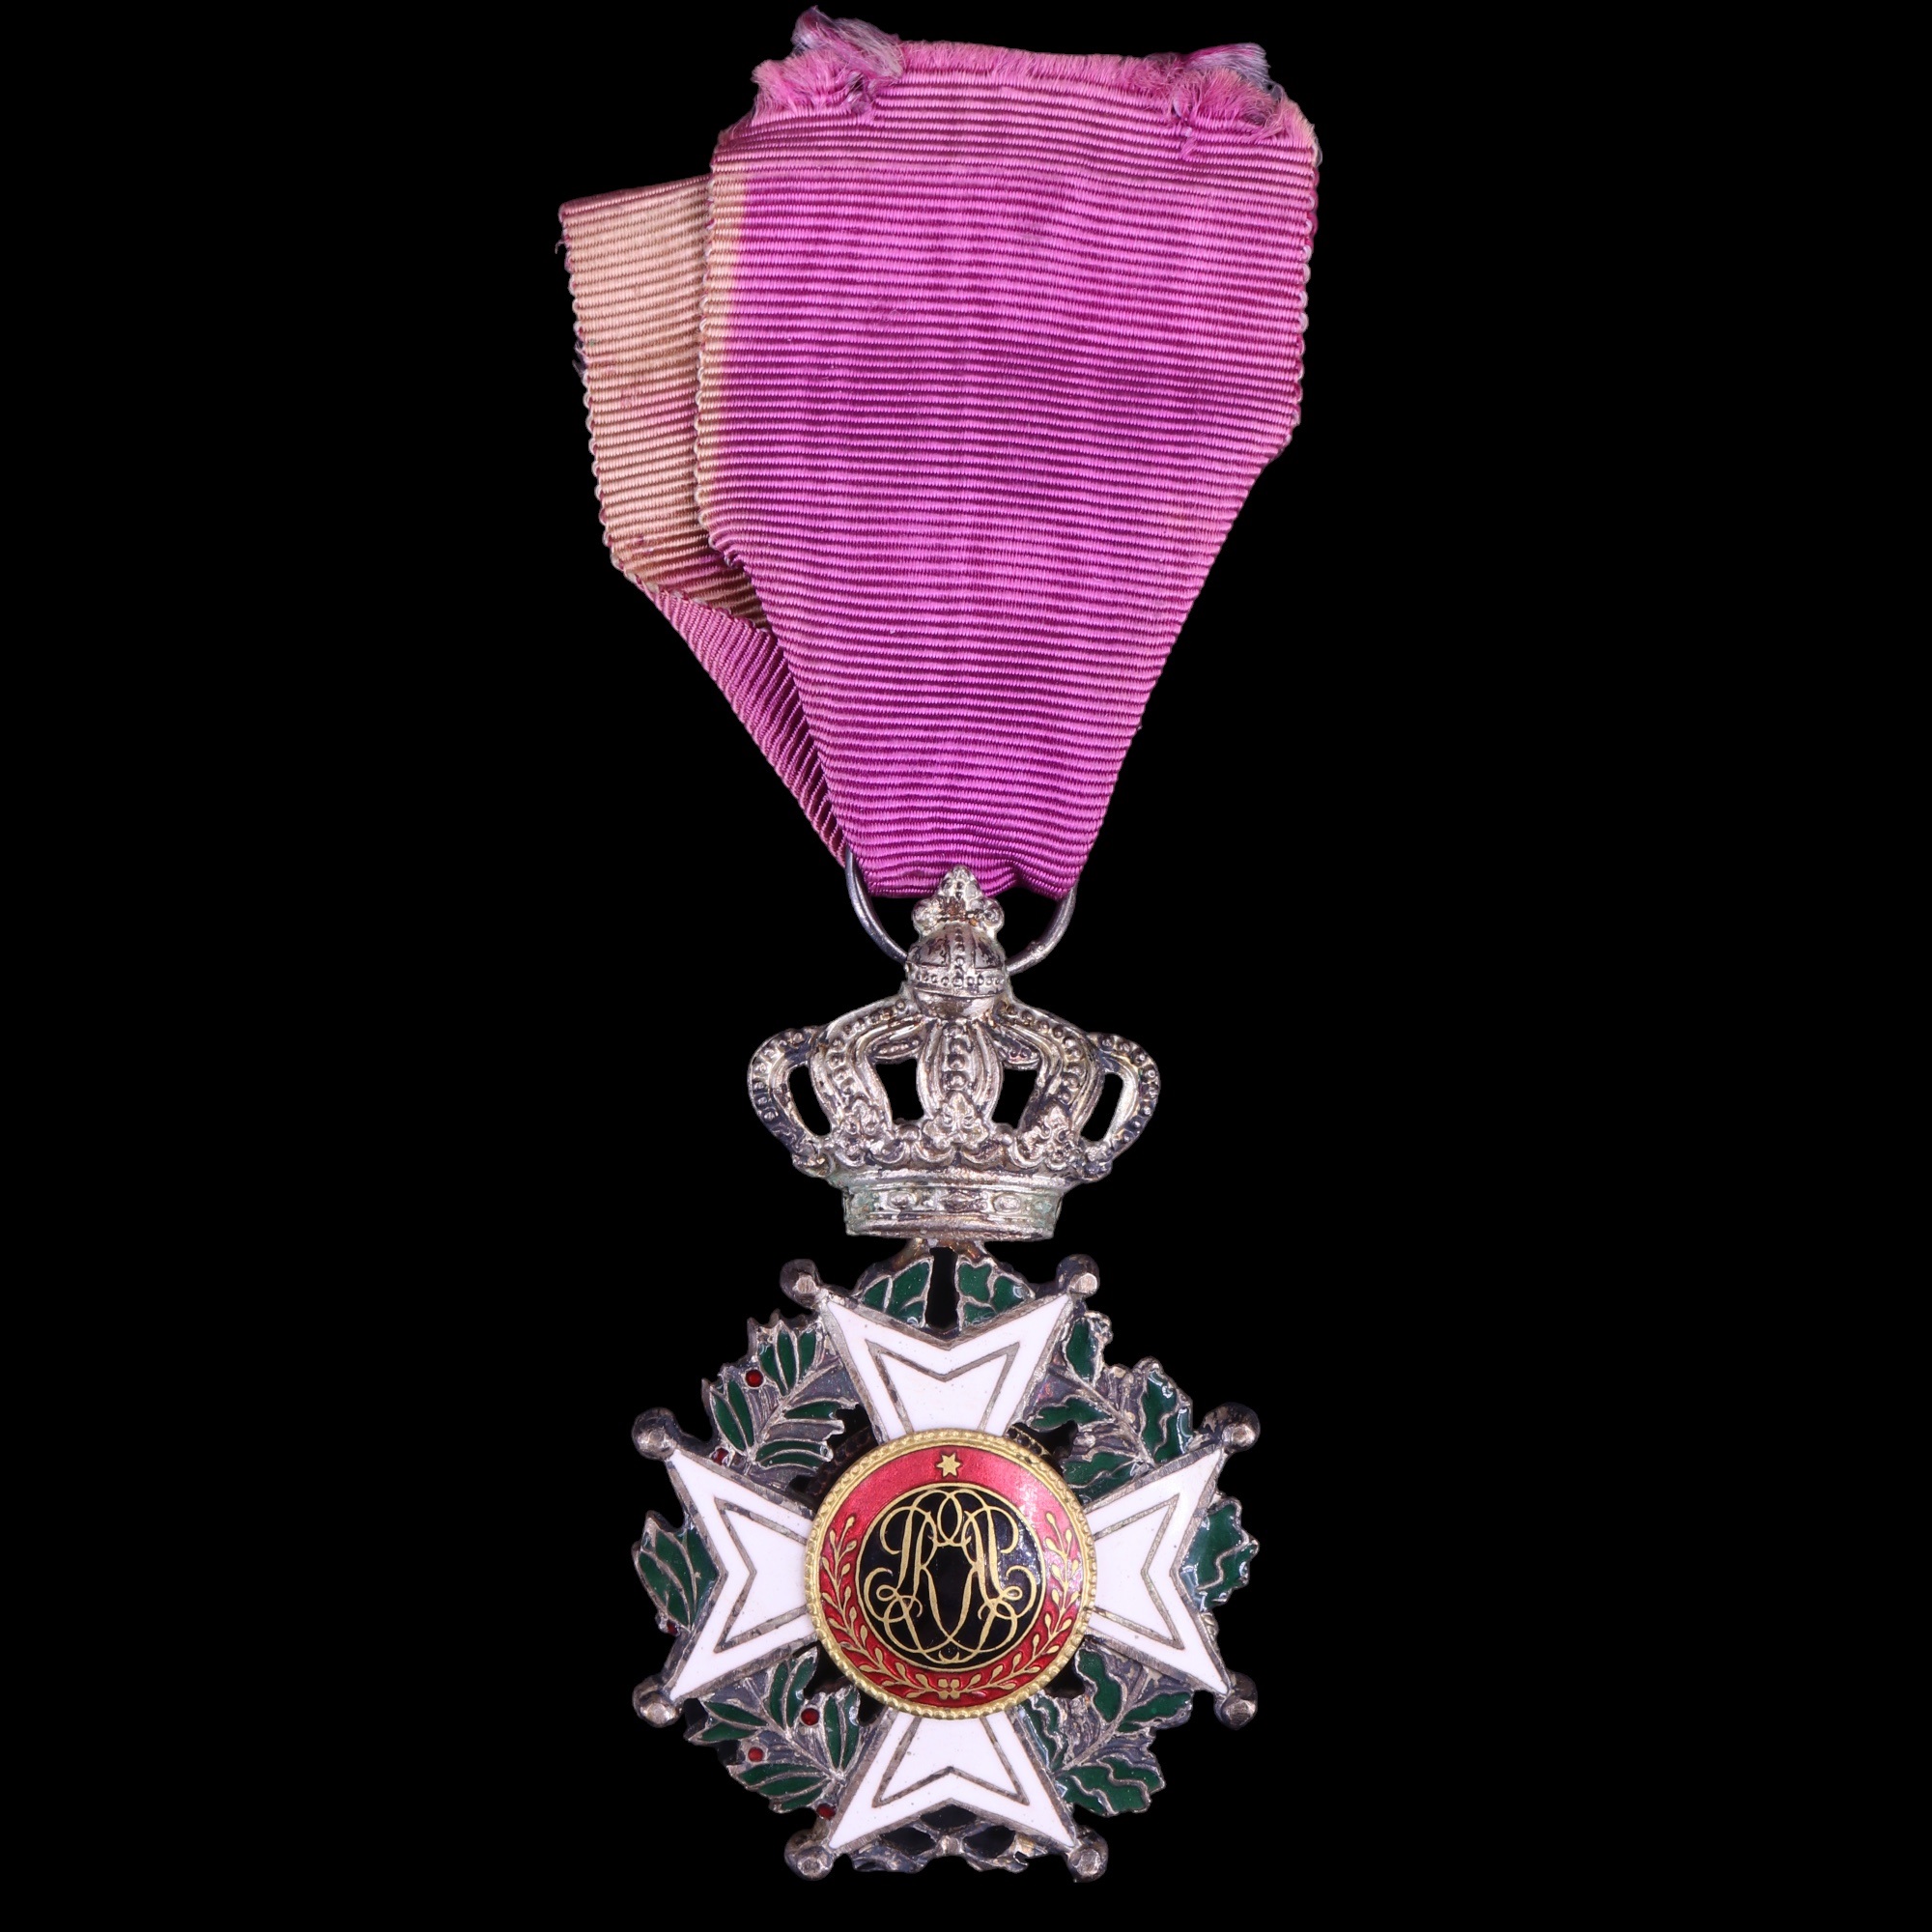 A Belgian Order Of Leopold medal - Image 2 of 2